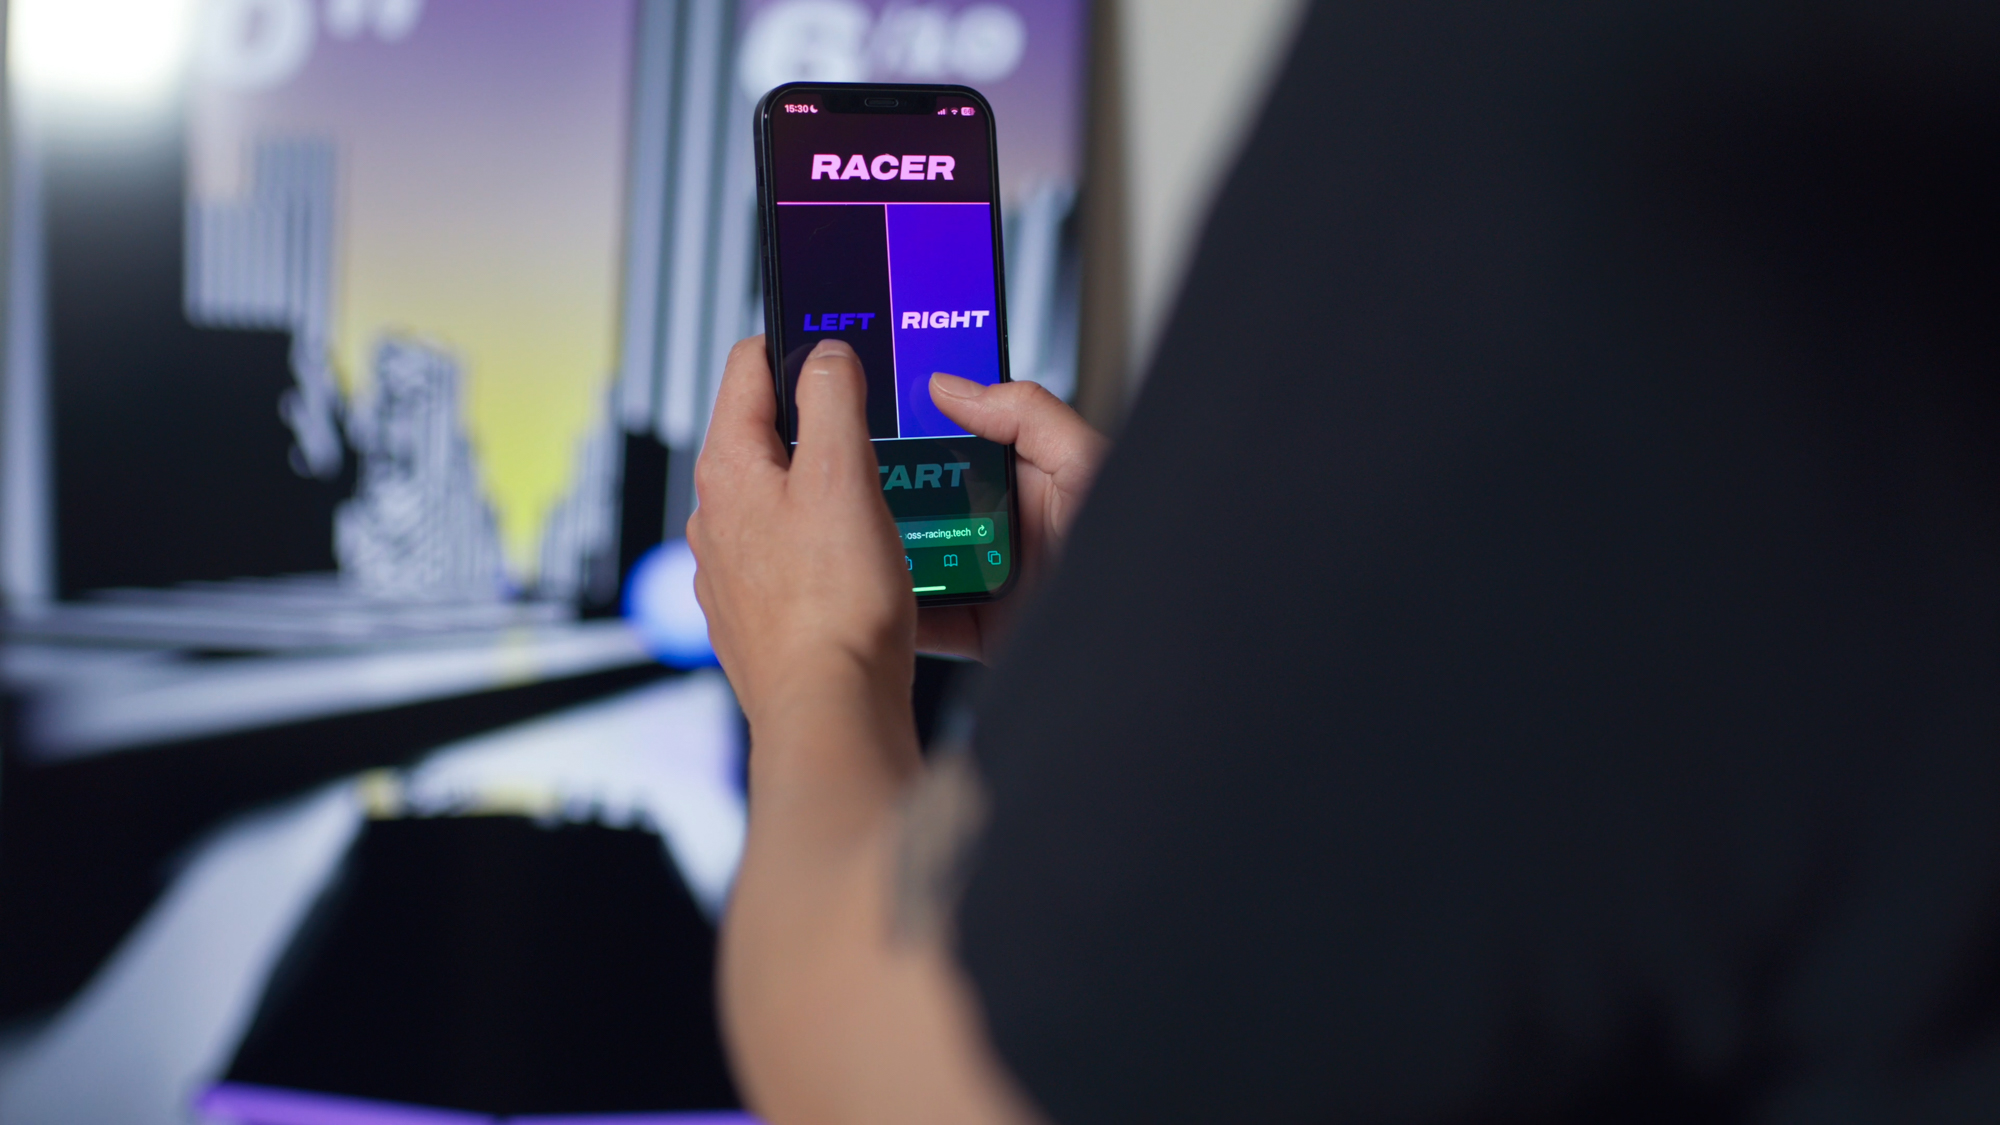 Closeup von Person, in der Hand MobilePhone, bedient Screen im Hintergrund, Storefront Racer interaktive Gamification